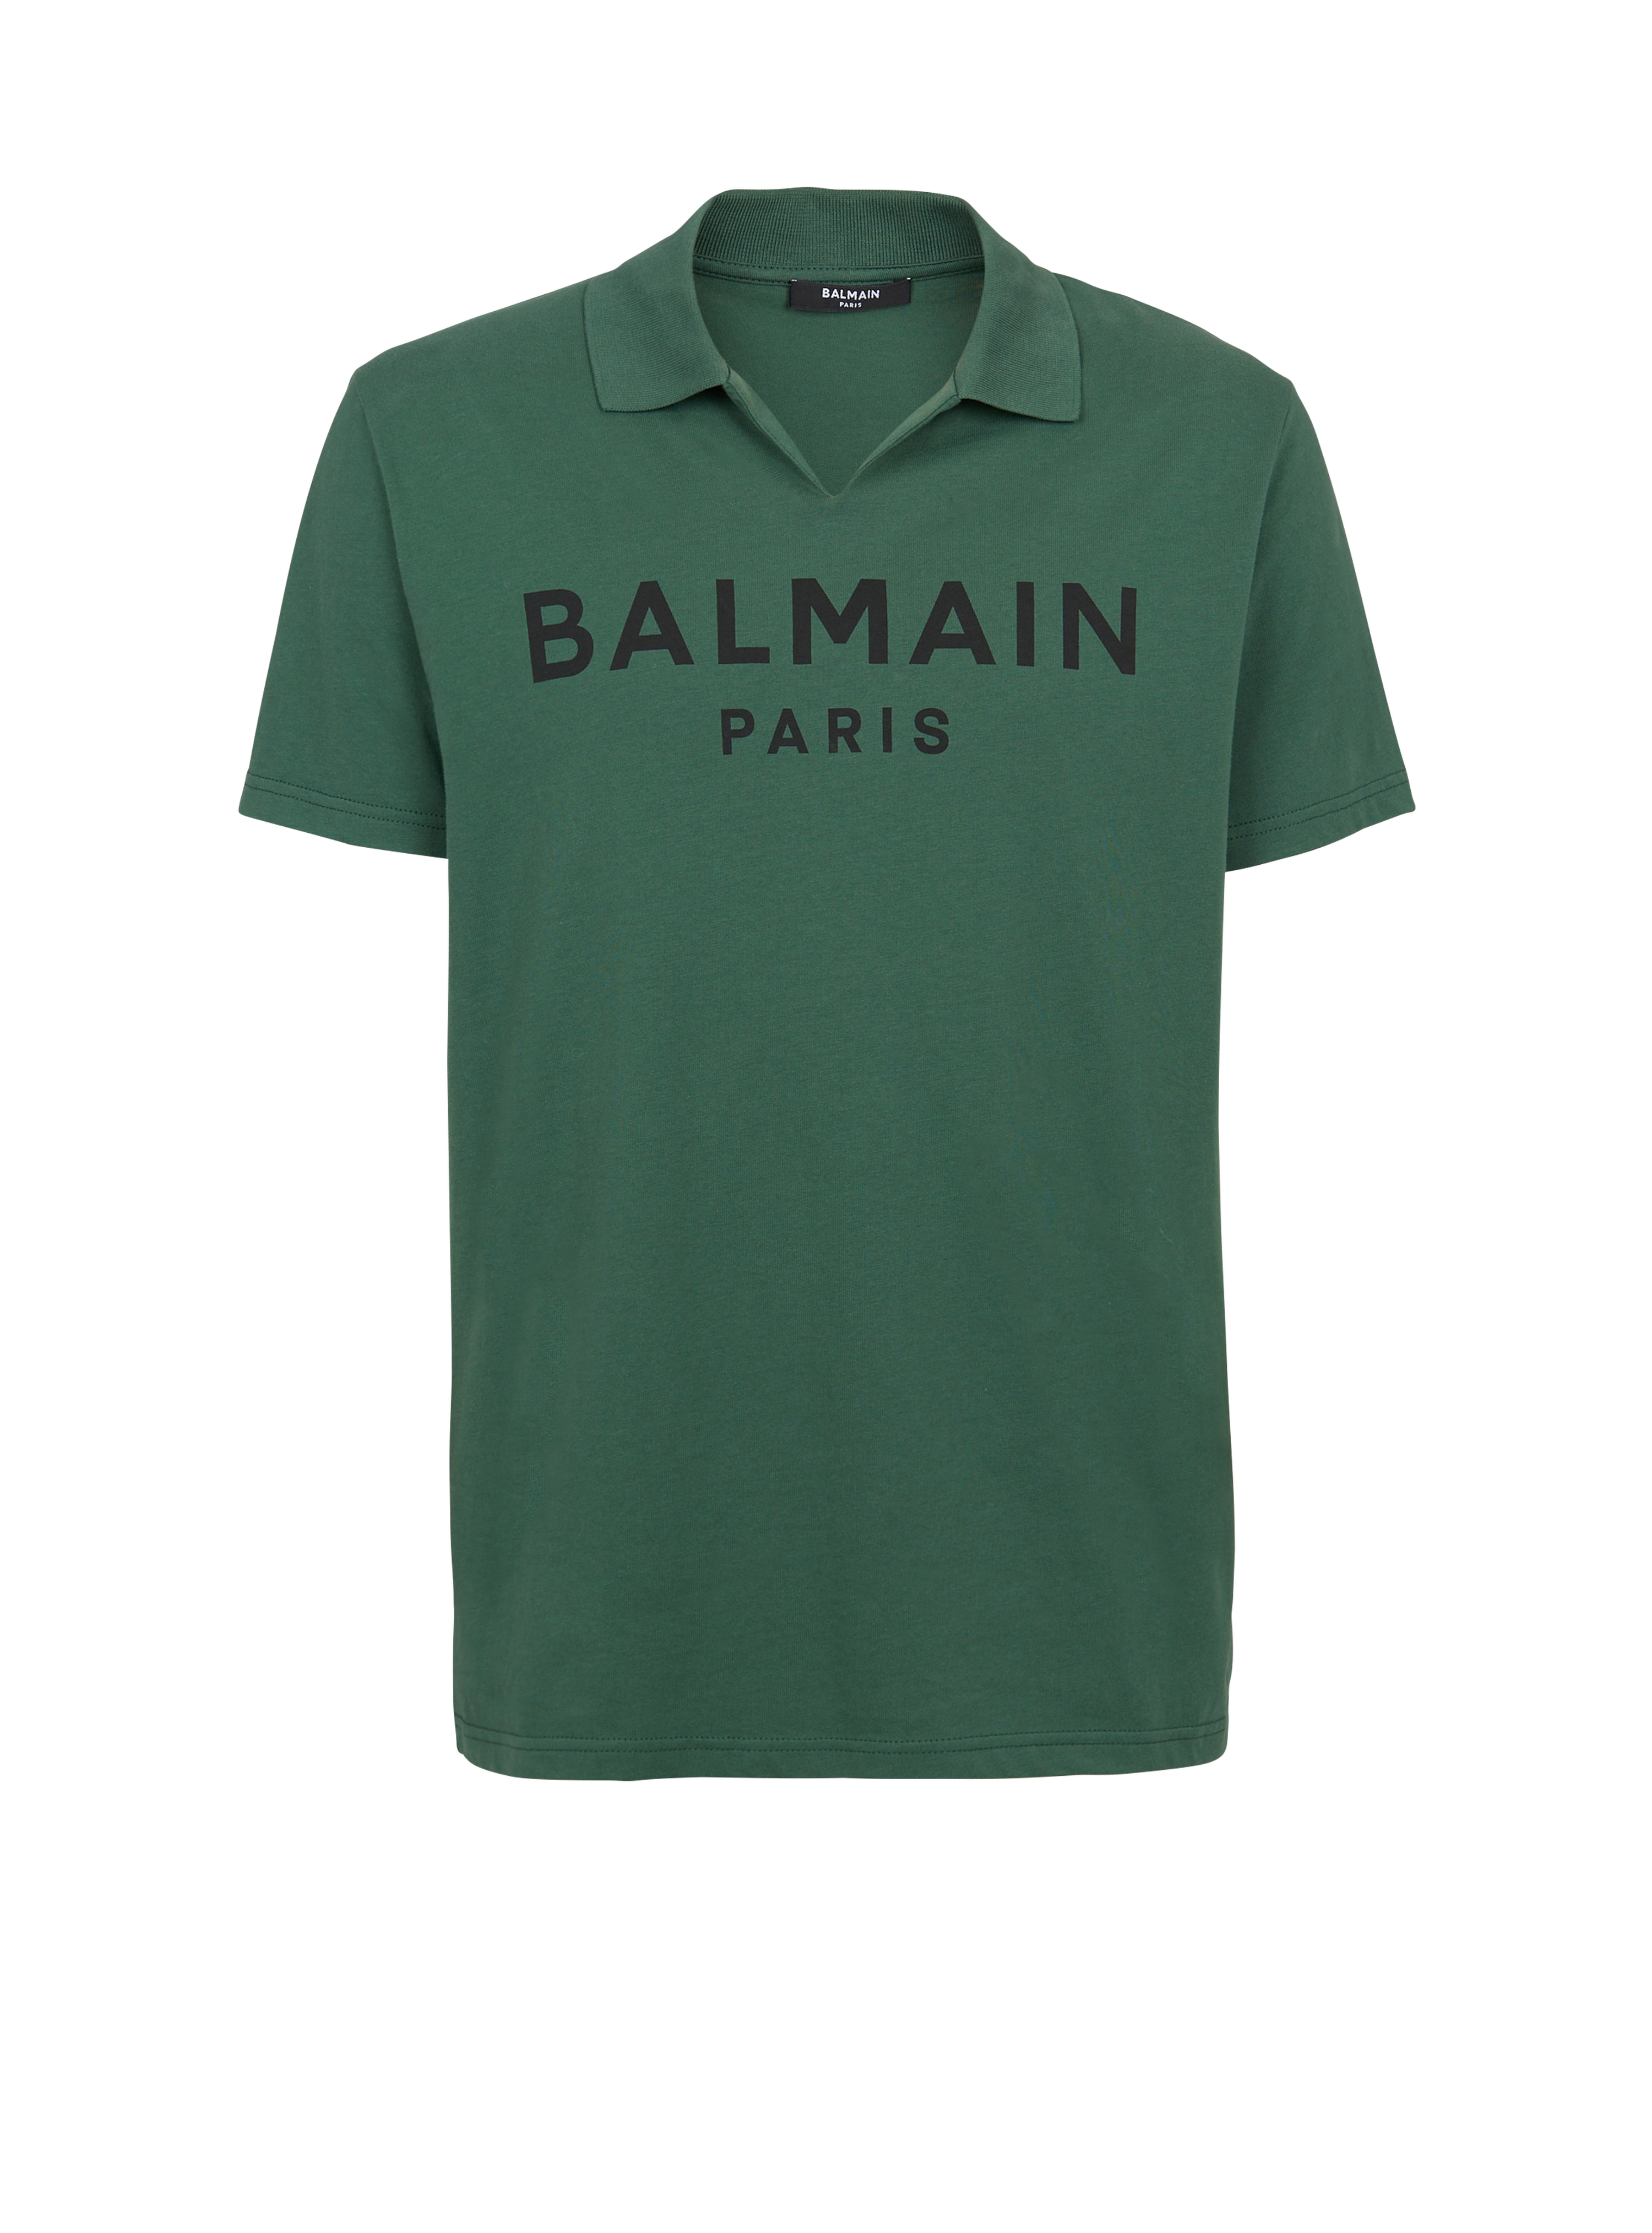 Cotton polo with black Balmain logo print, green